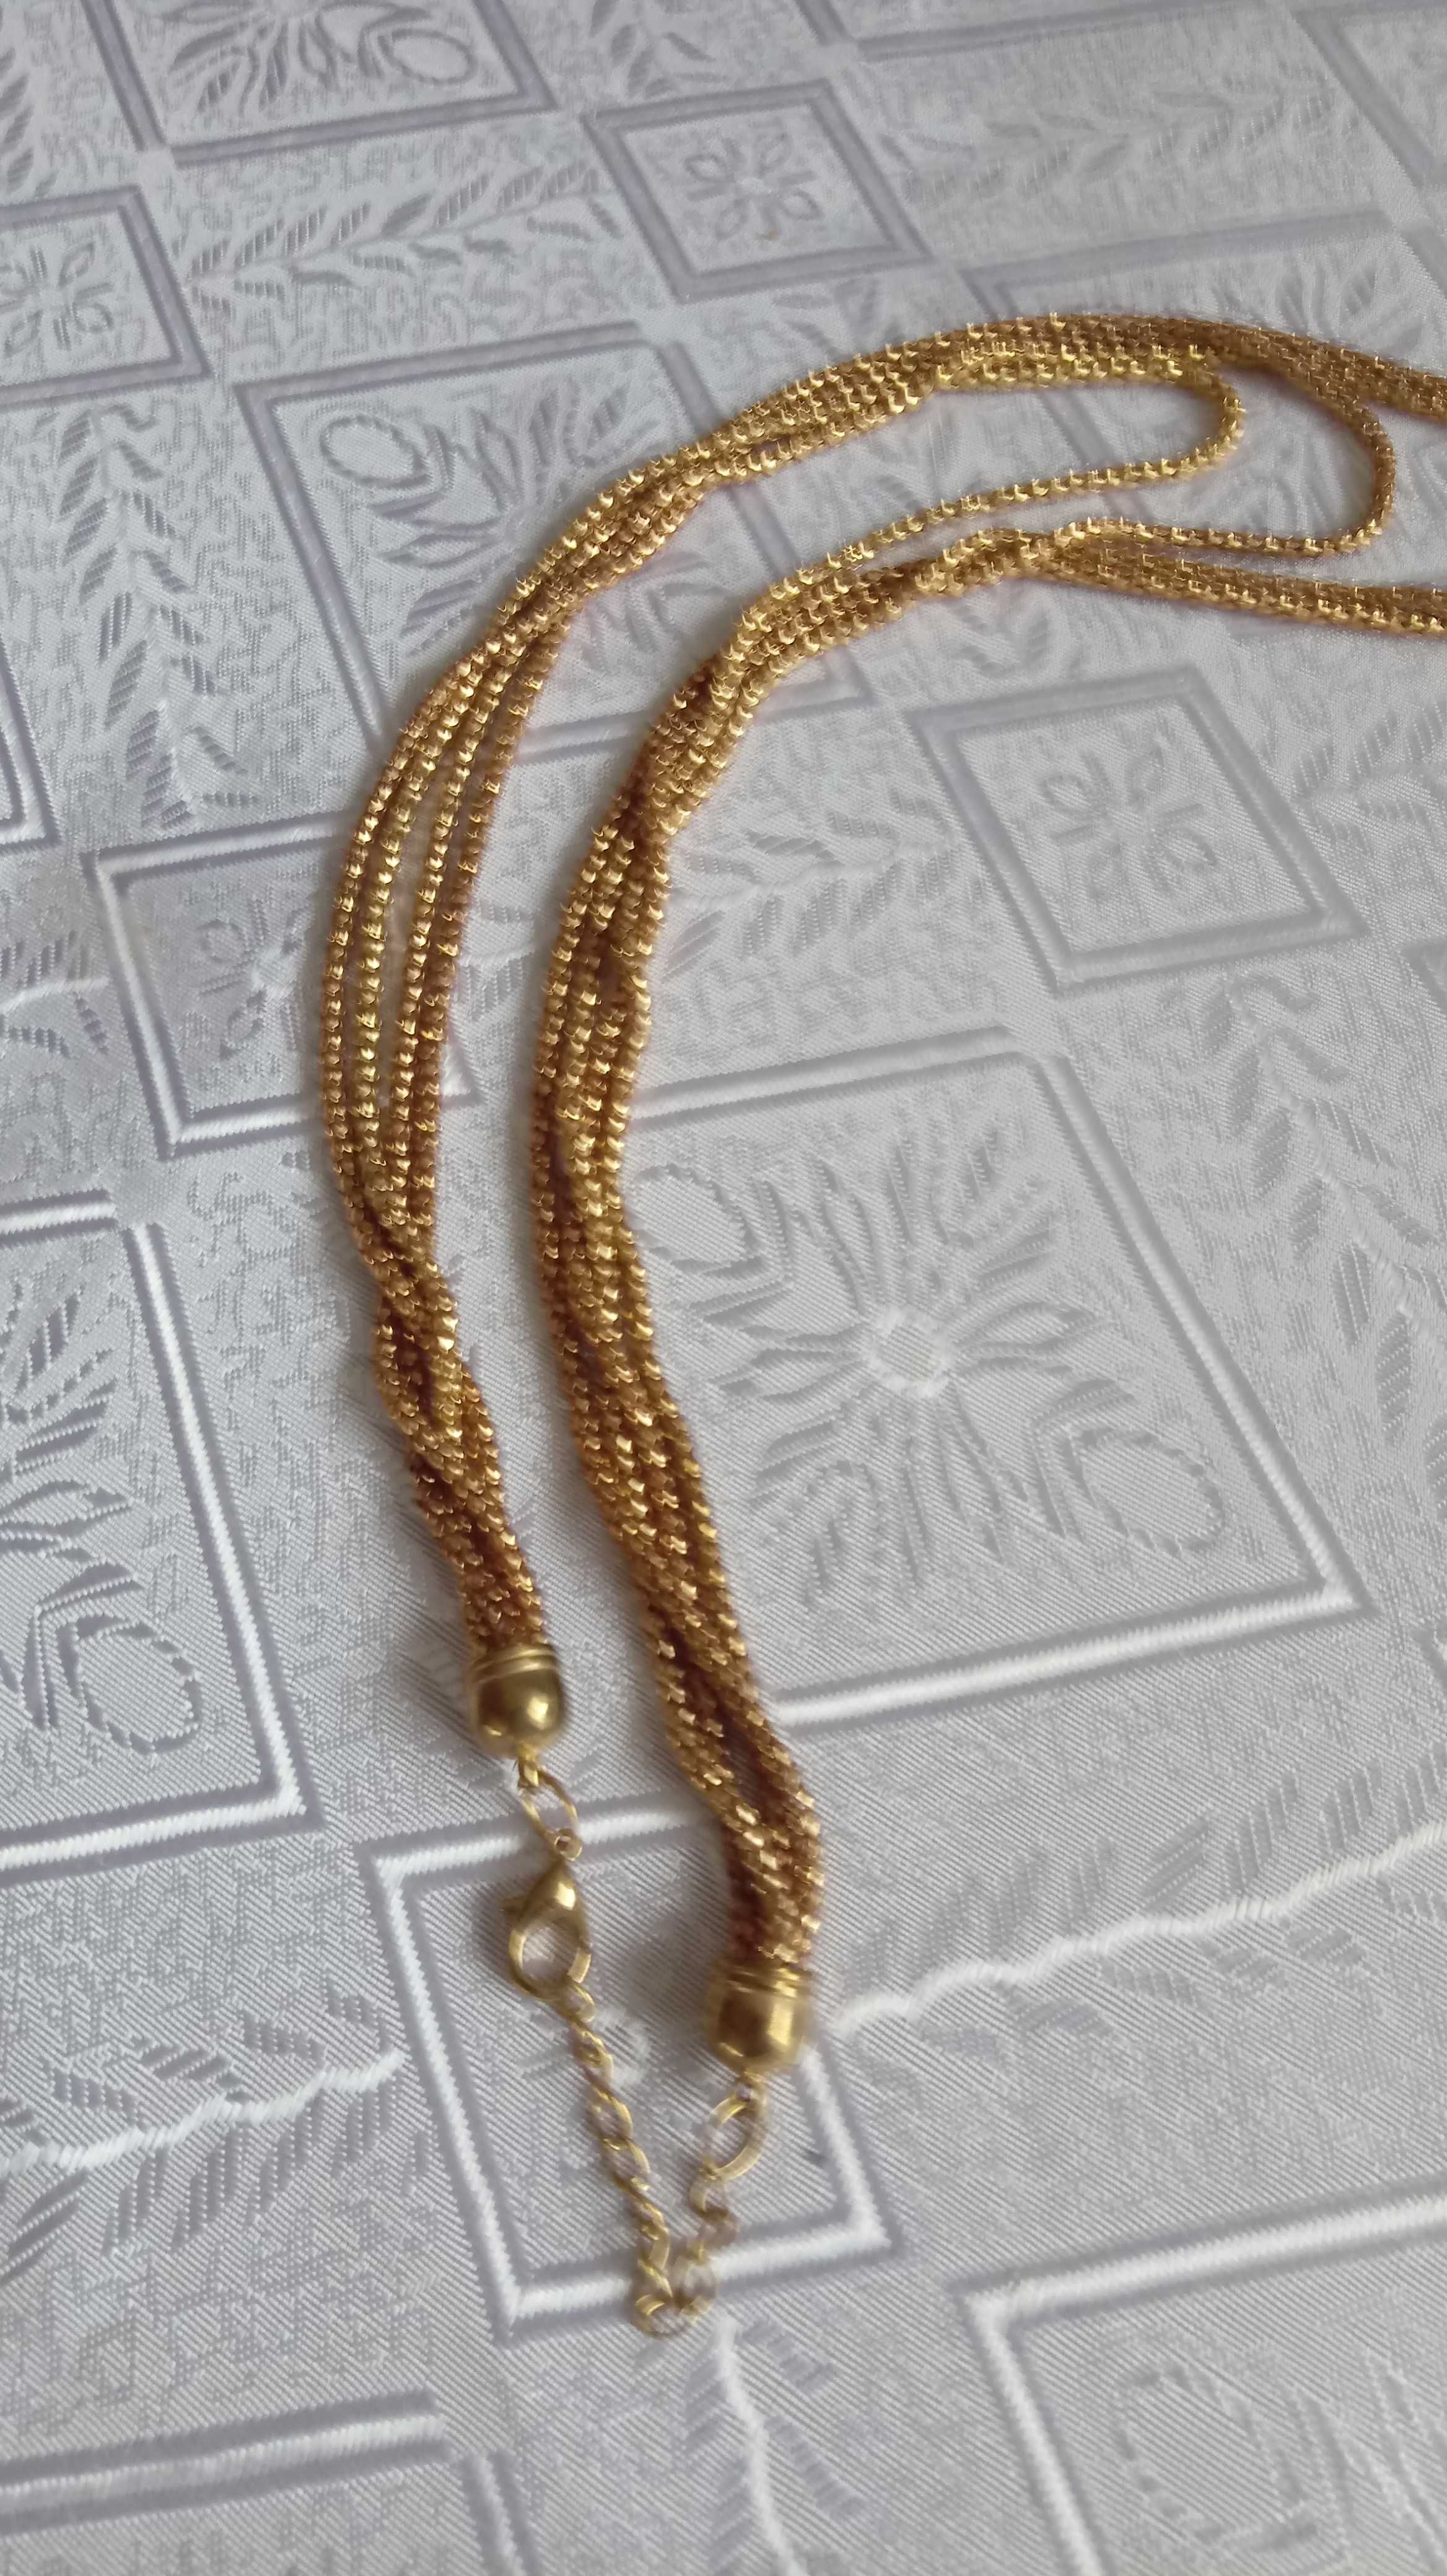 Łańcuszek,kolor stare złoto, dł. 70 cm.